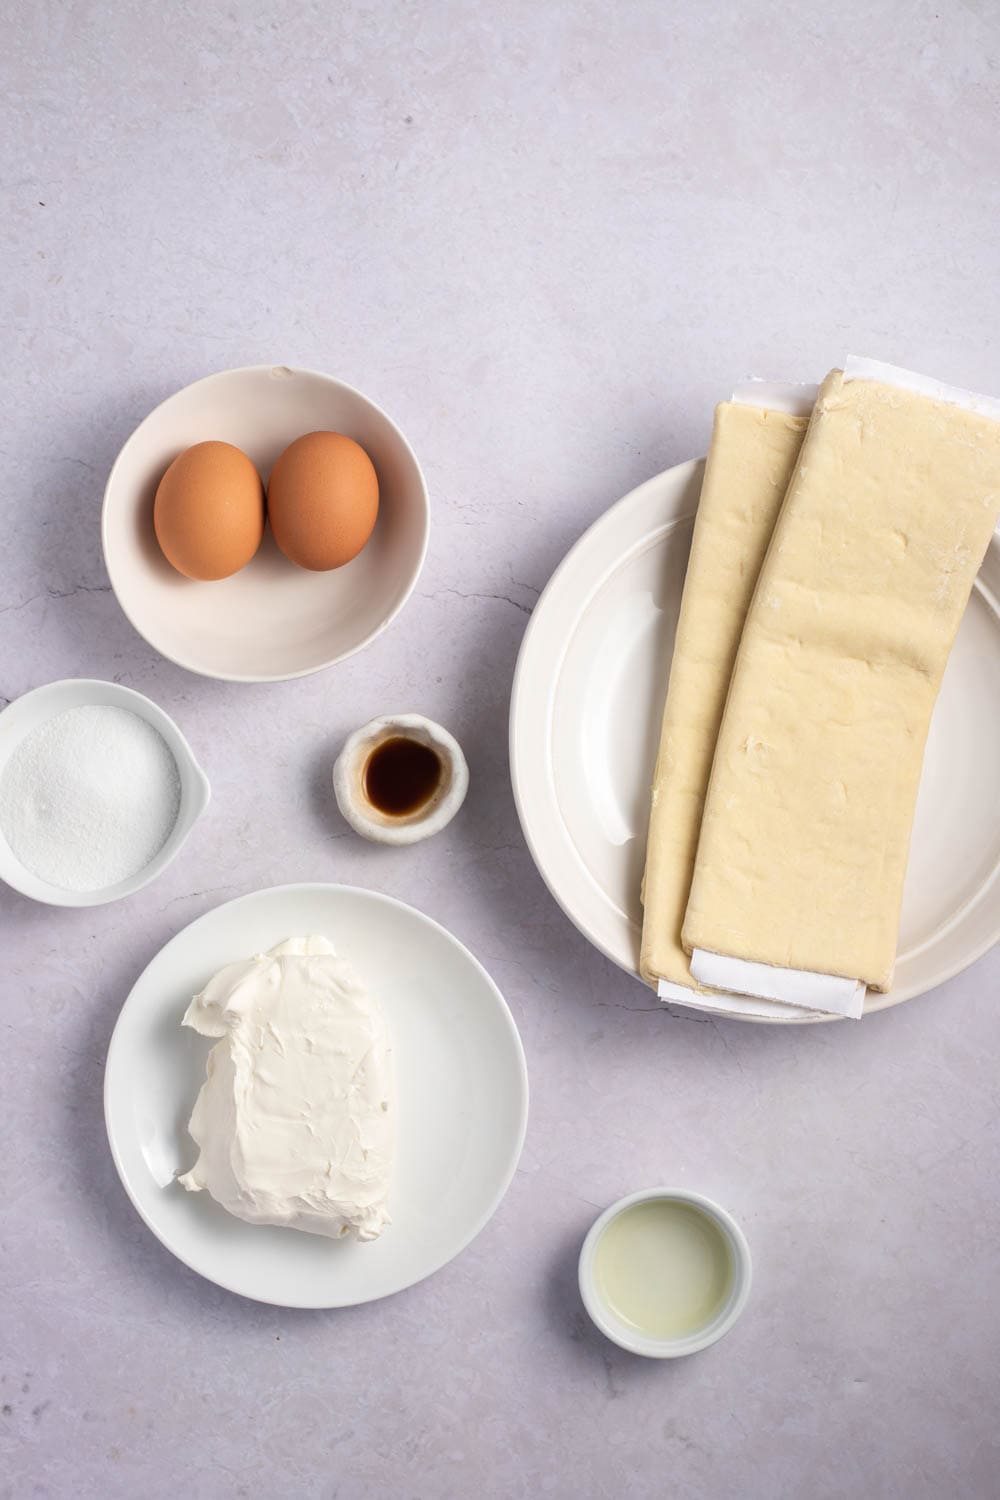 Cheese Danish Ingredients: eggs, sugar, cream cheese, vanilla, and puff pastry 